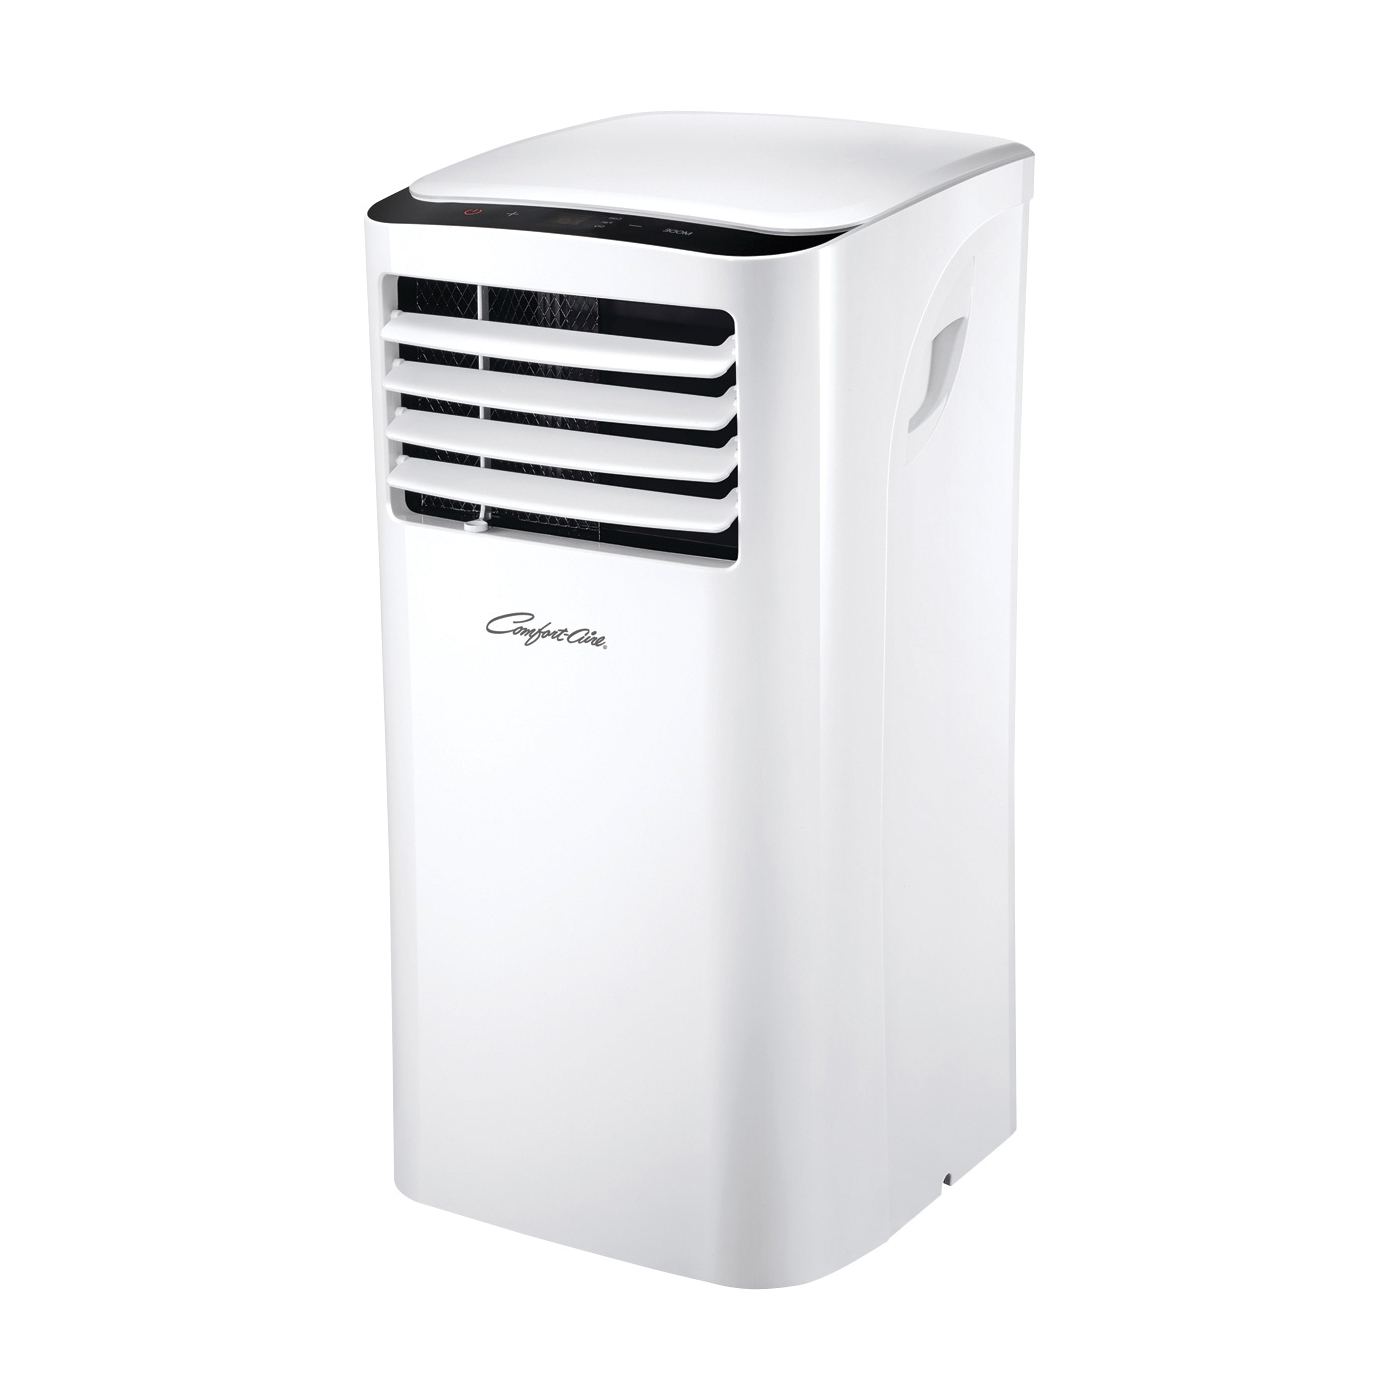 PS-81B Portable Air Conditioner, 115 V, 60 Hz, 8000 Btu/hr Cooling, 2-Speed, R-410a Refrigerant